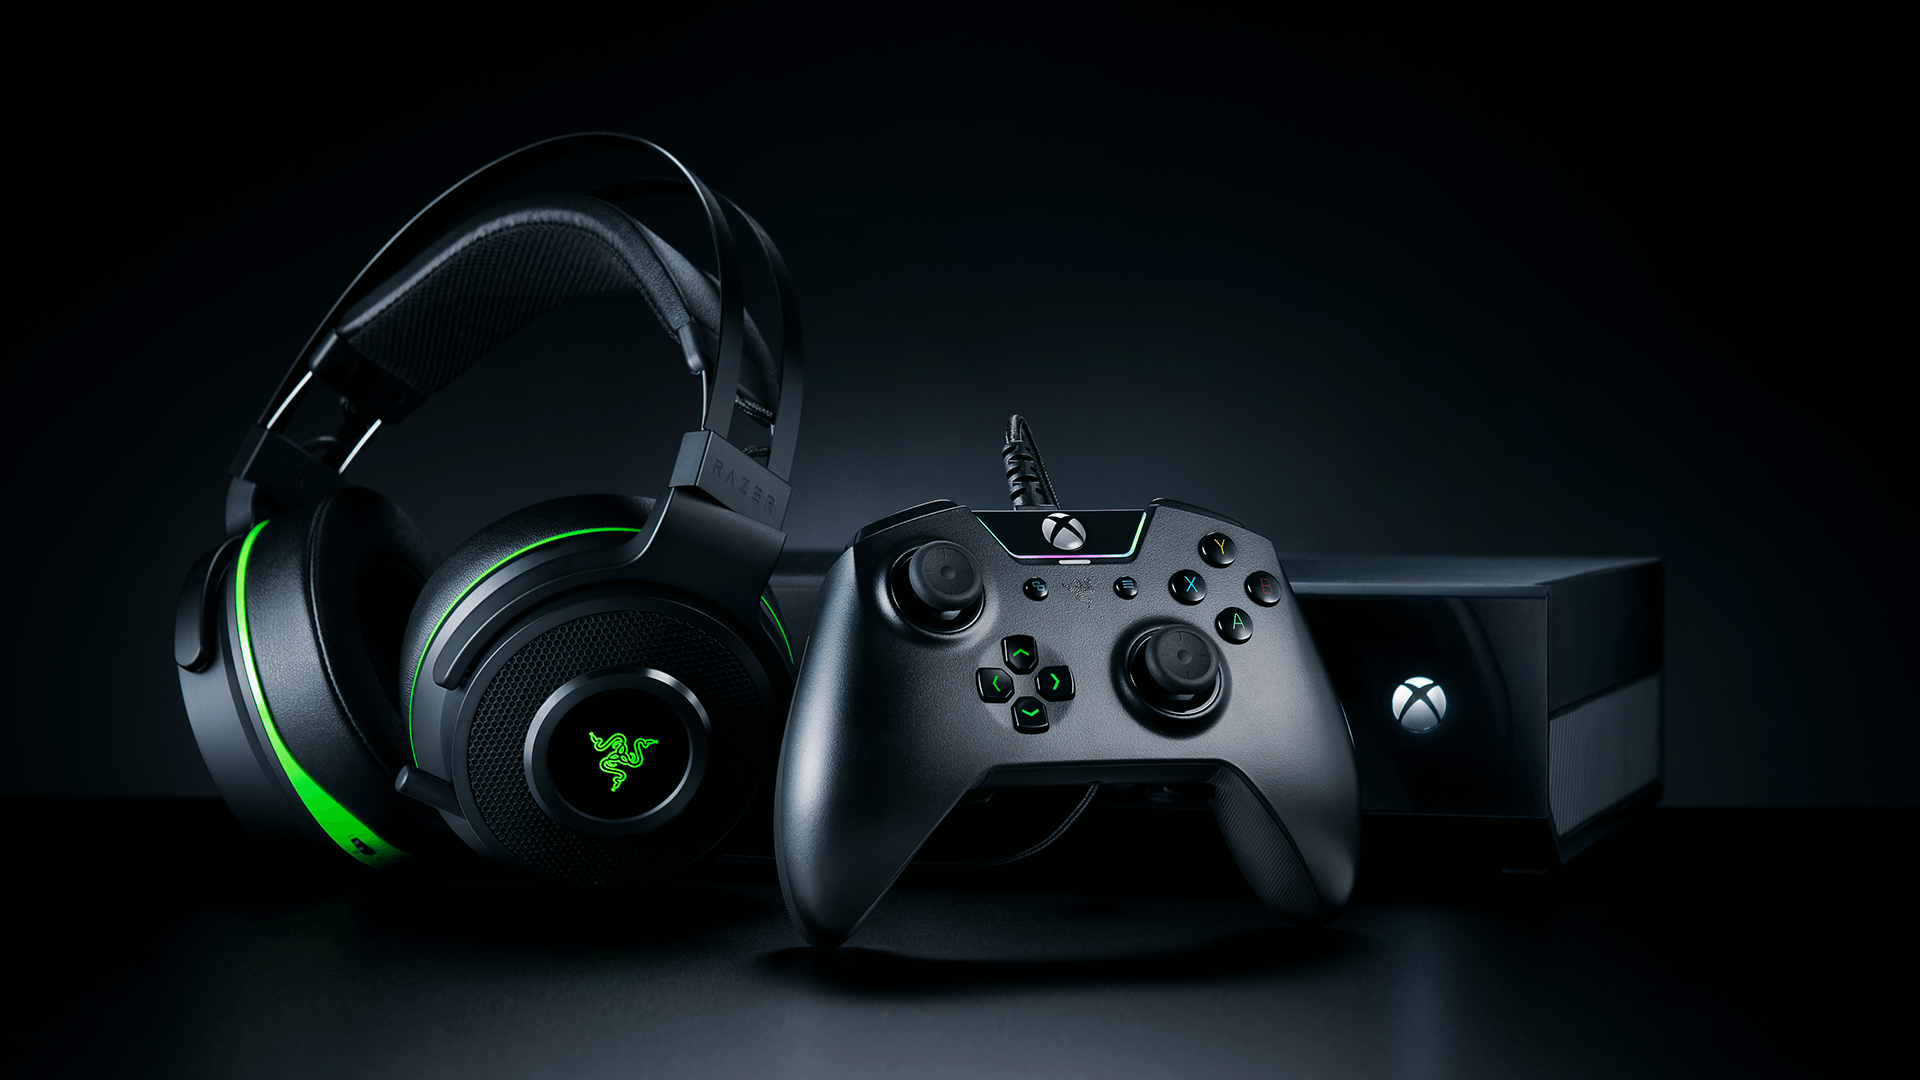 Razer Xbox One Products Will Work on Next-Gen